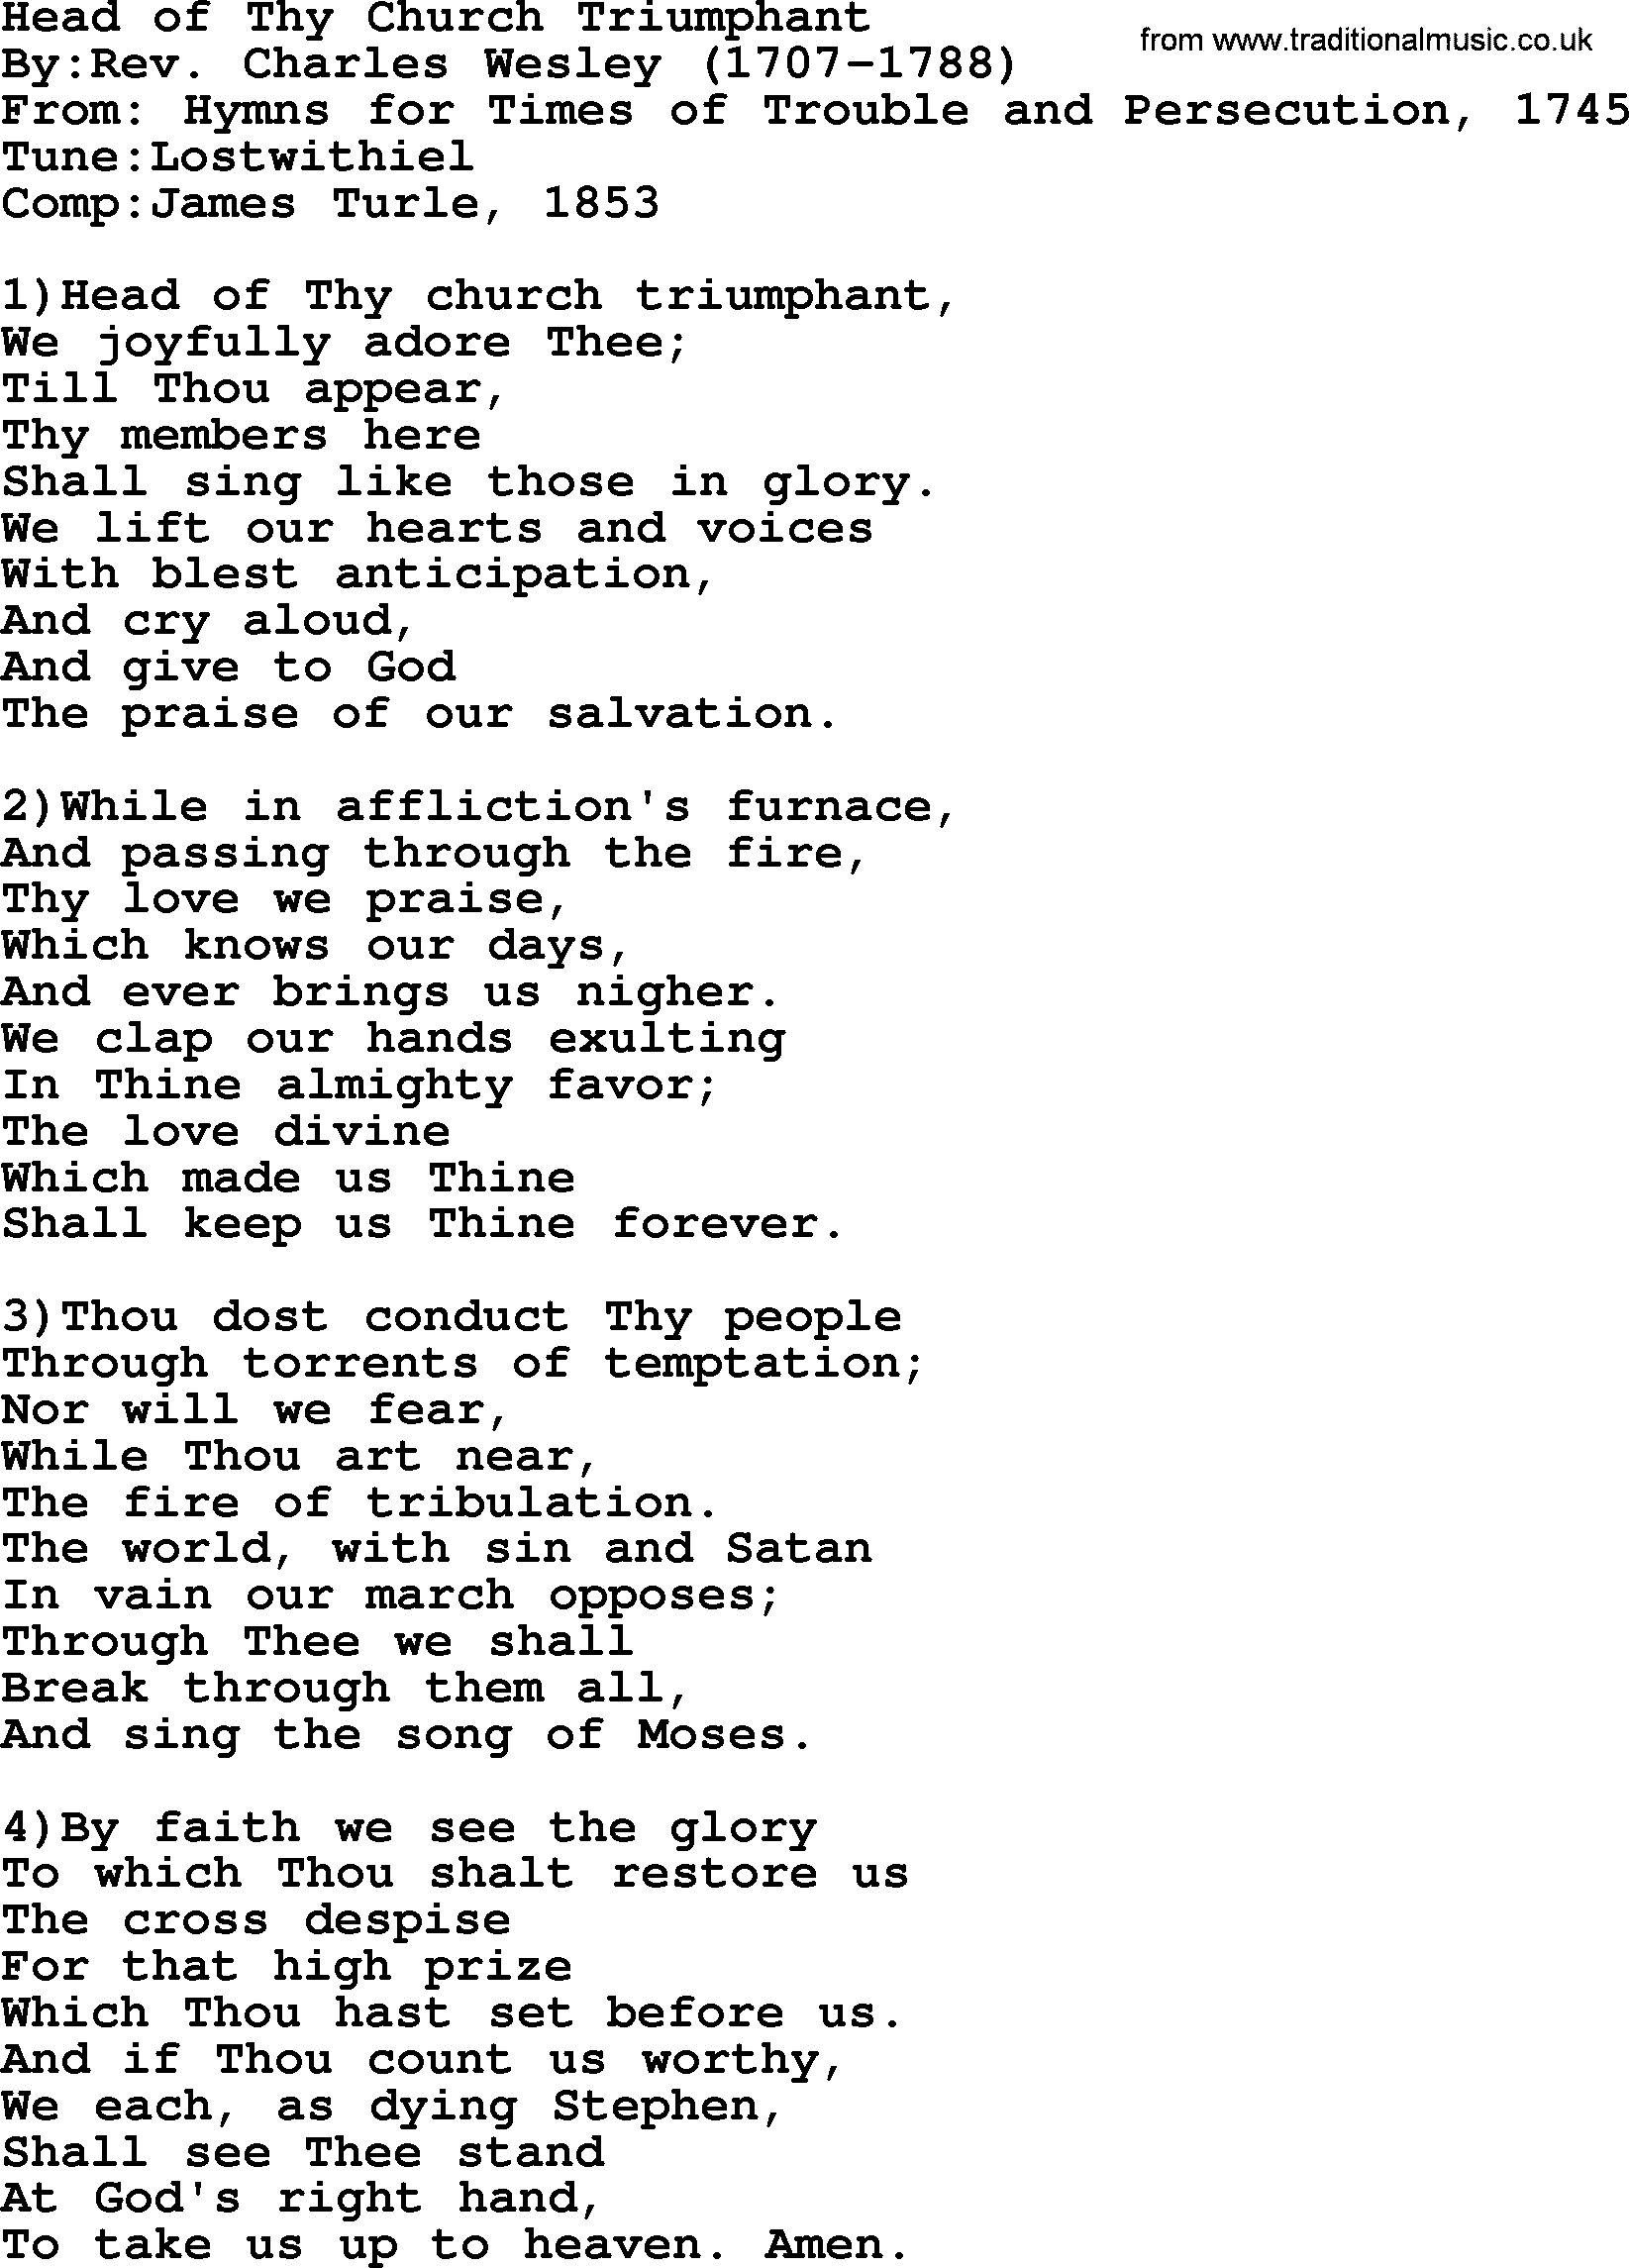 Methodist Hymn: Head Of Thy Church Triumphant, lyrics